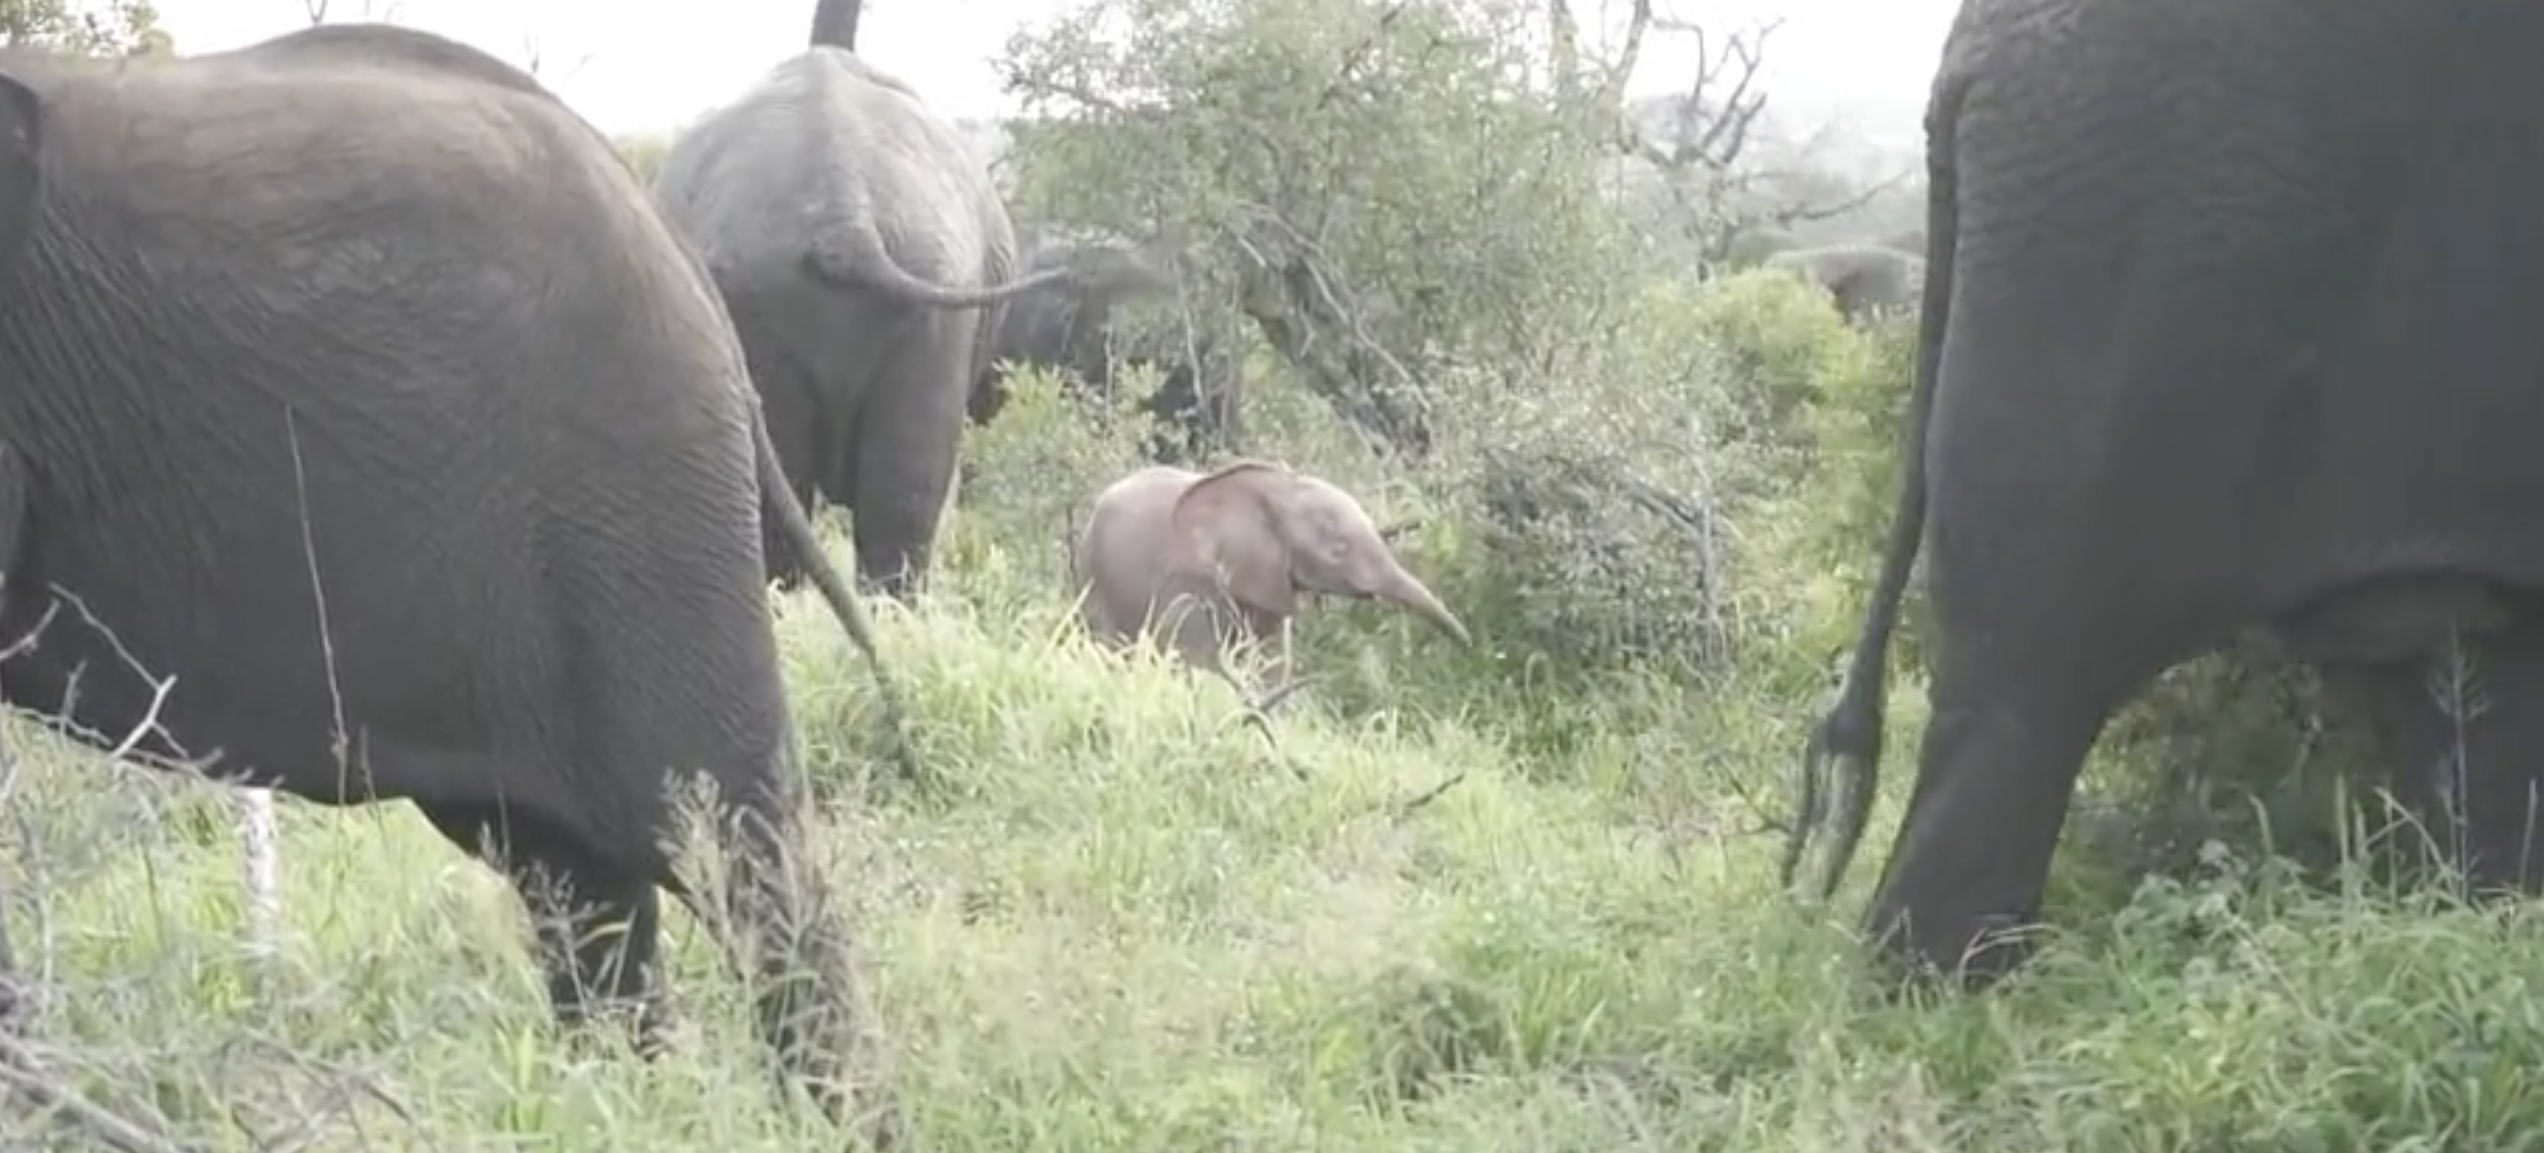 Игры розового слона в Южной Африке попали на видео